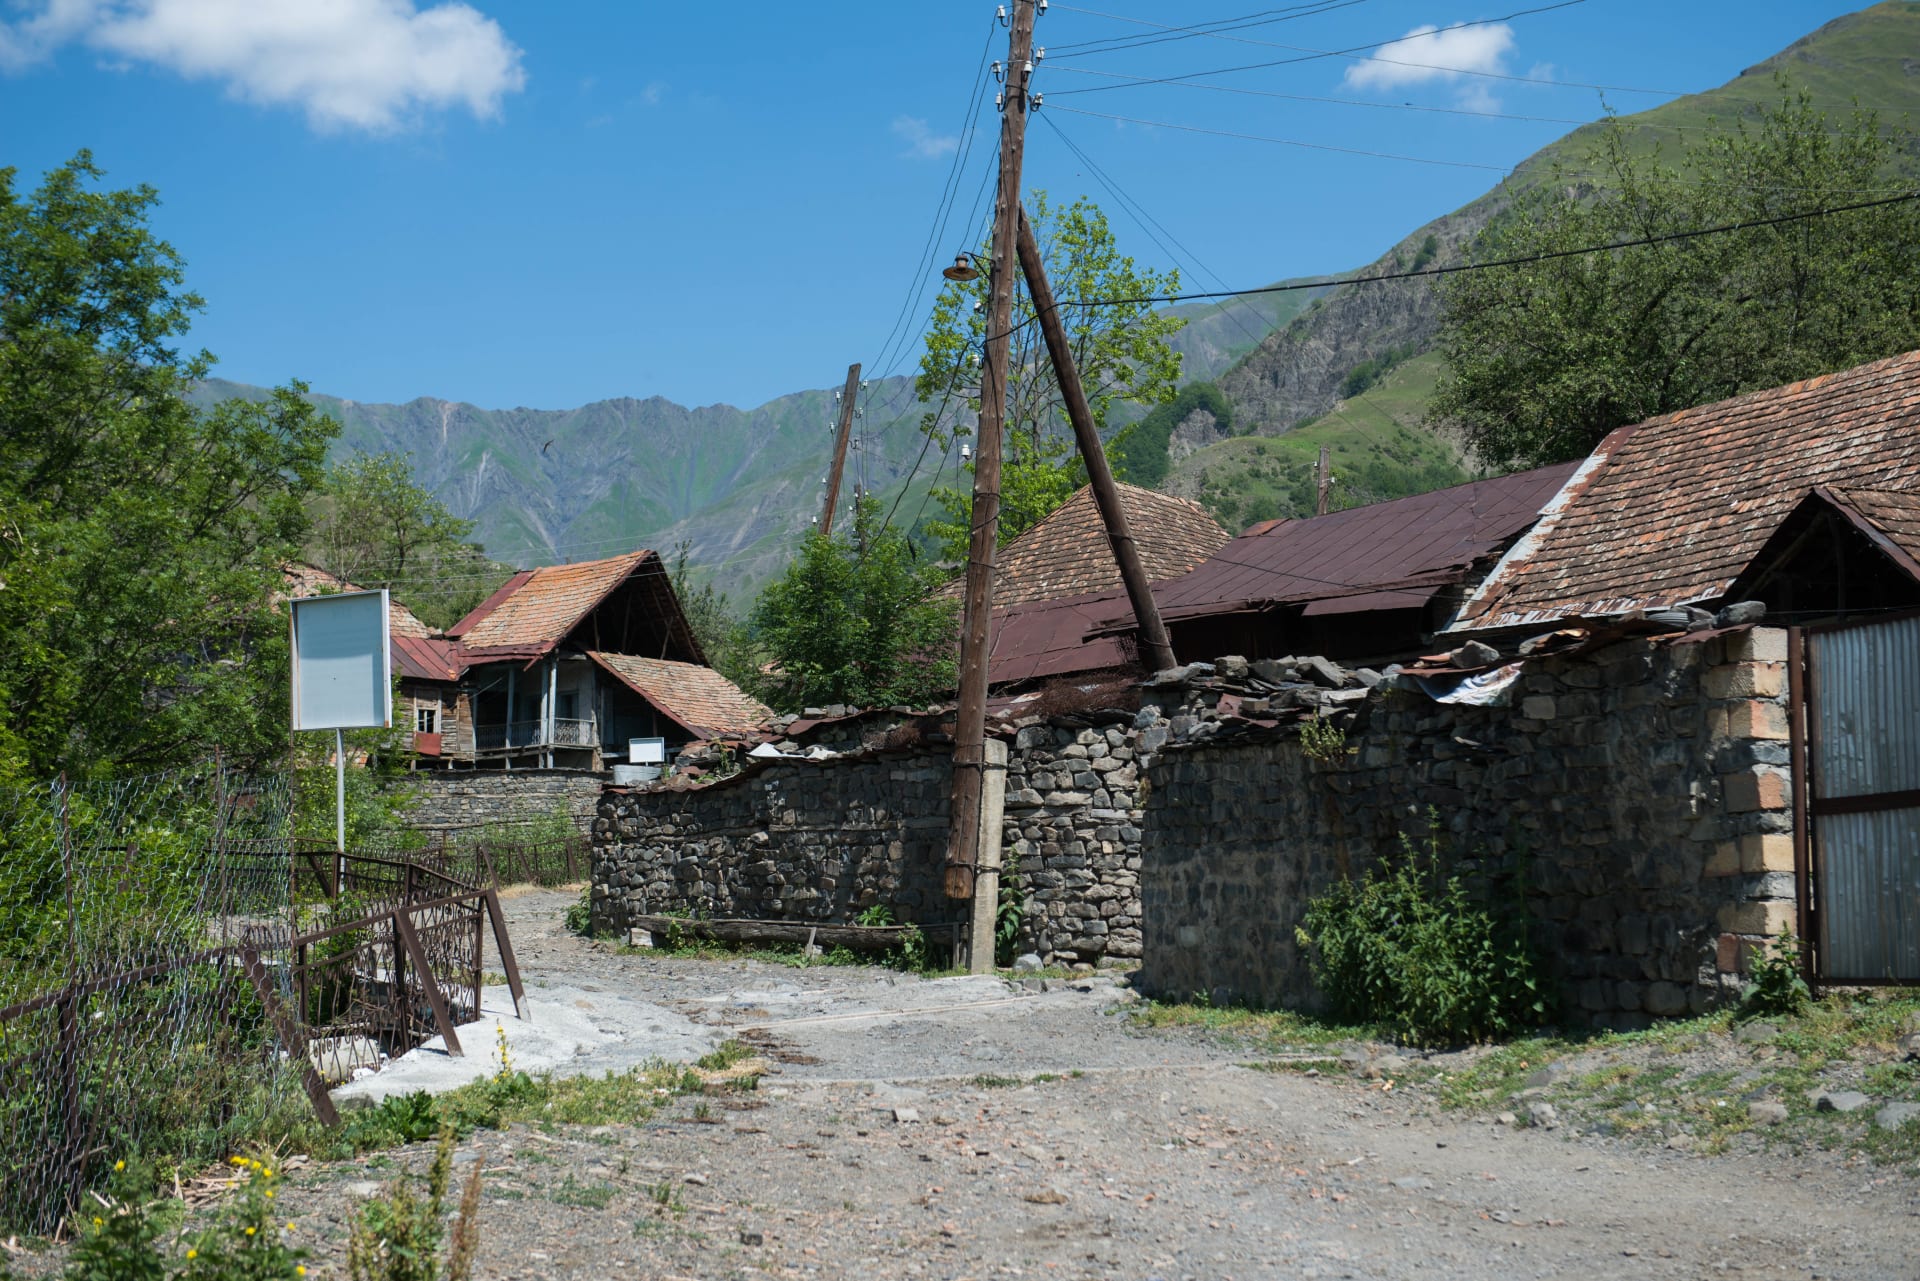 استكشف جمال قرية "الرأس الأصفر" بأذربيجان والسبب وراء تسميتها